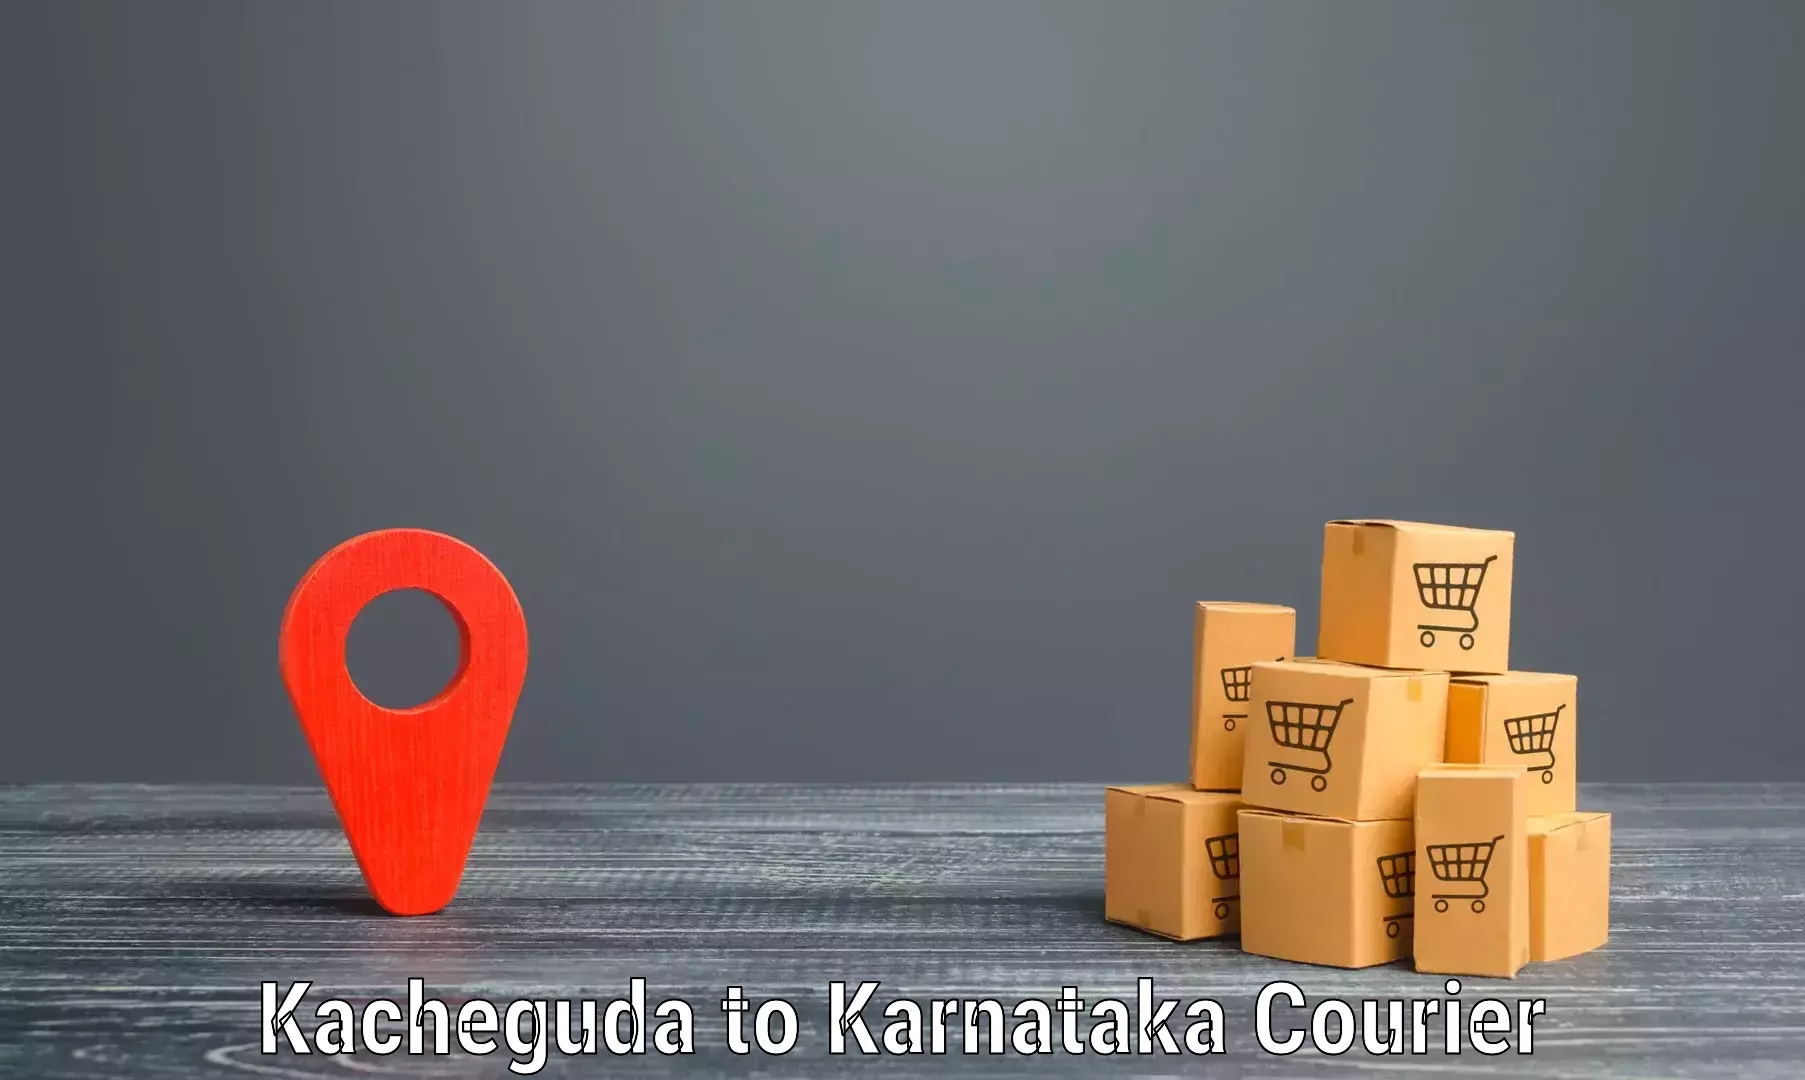 User-friendly delivery service Kacheguda to Piriyapatna